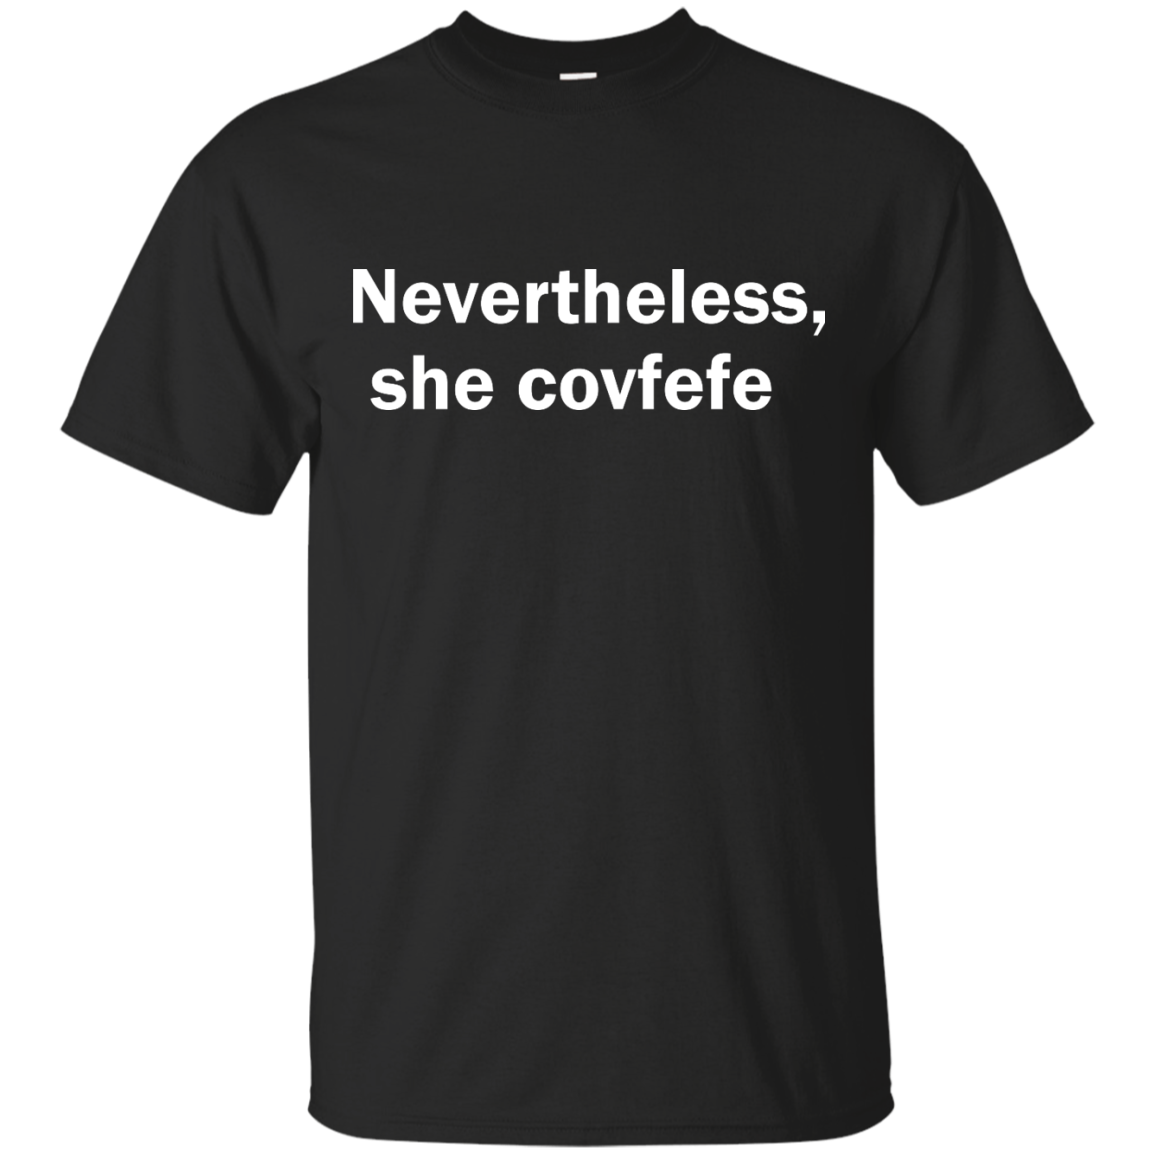 Nevertheless She Covfefe shirt, tank, sweater